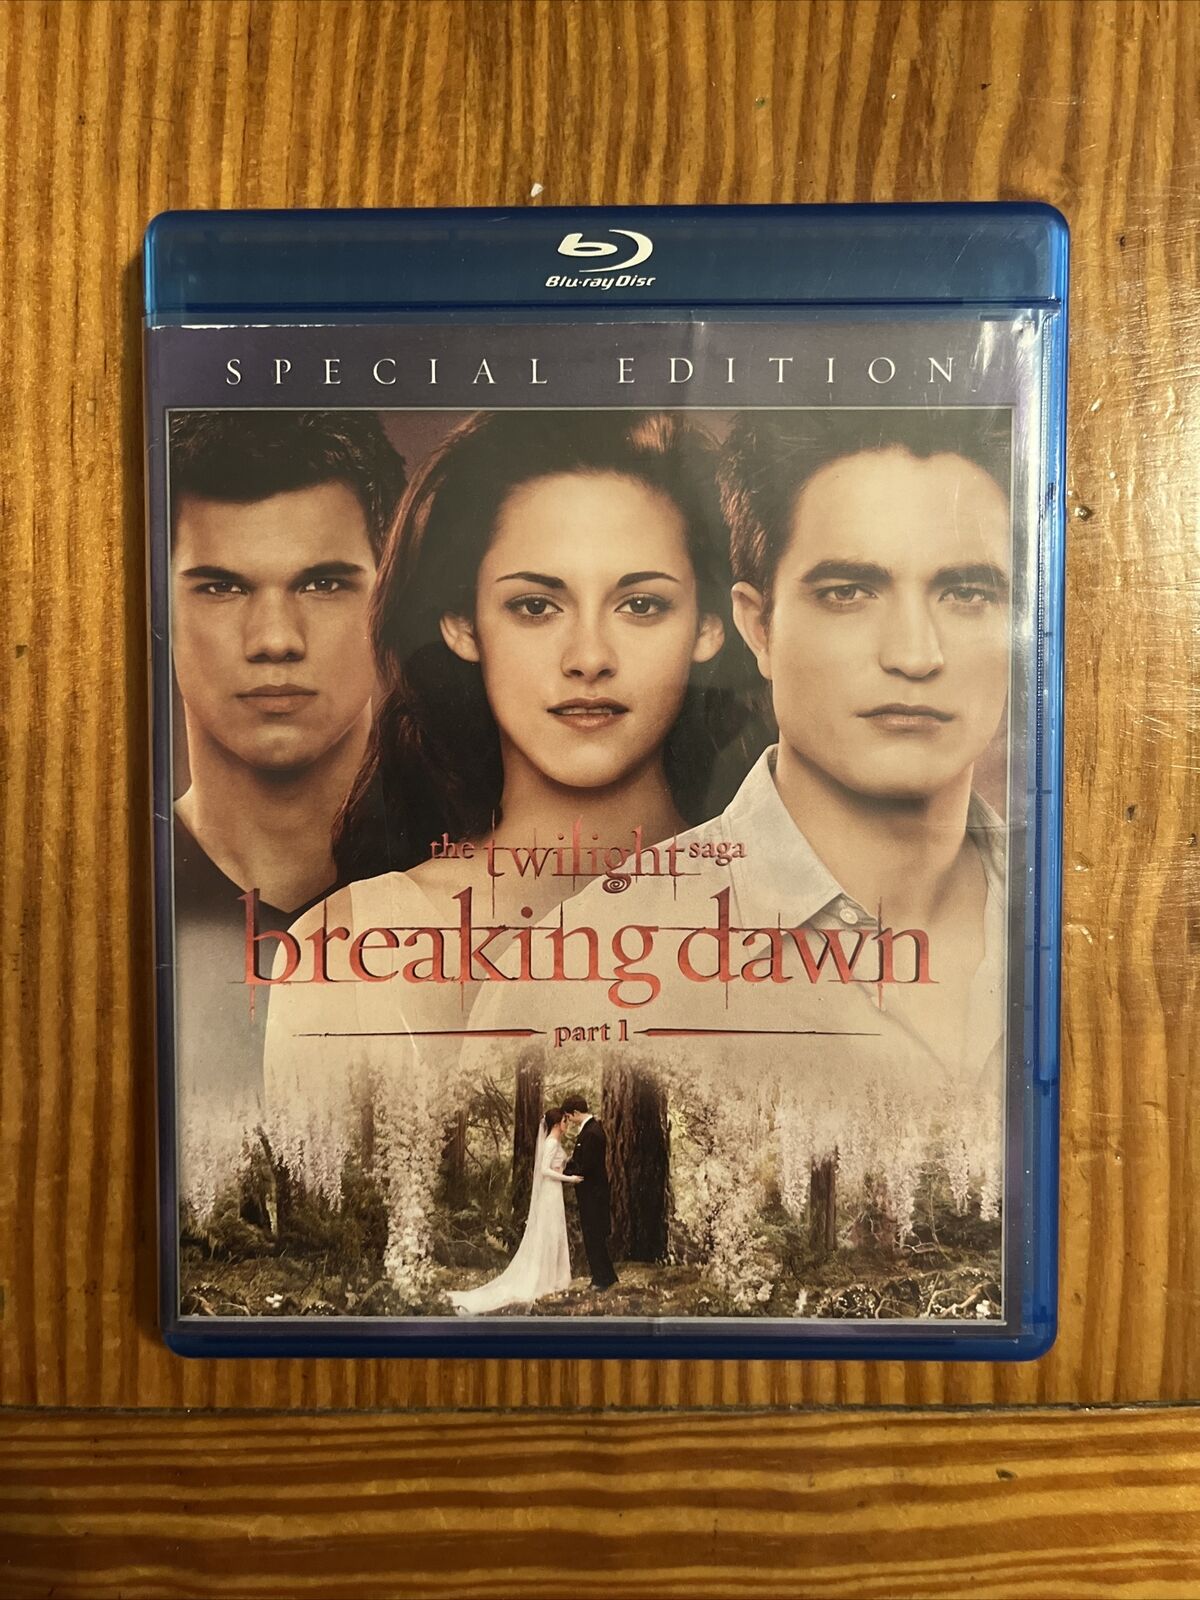 The Twilight Saga: Breaking Dawn - Part 1 Blu-Ray - image 1 of 4